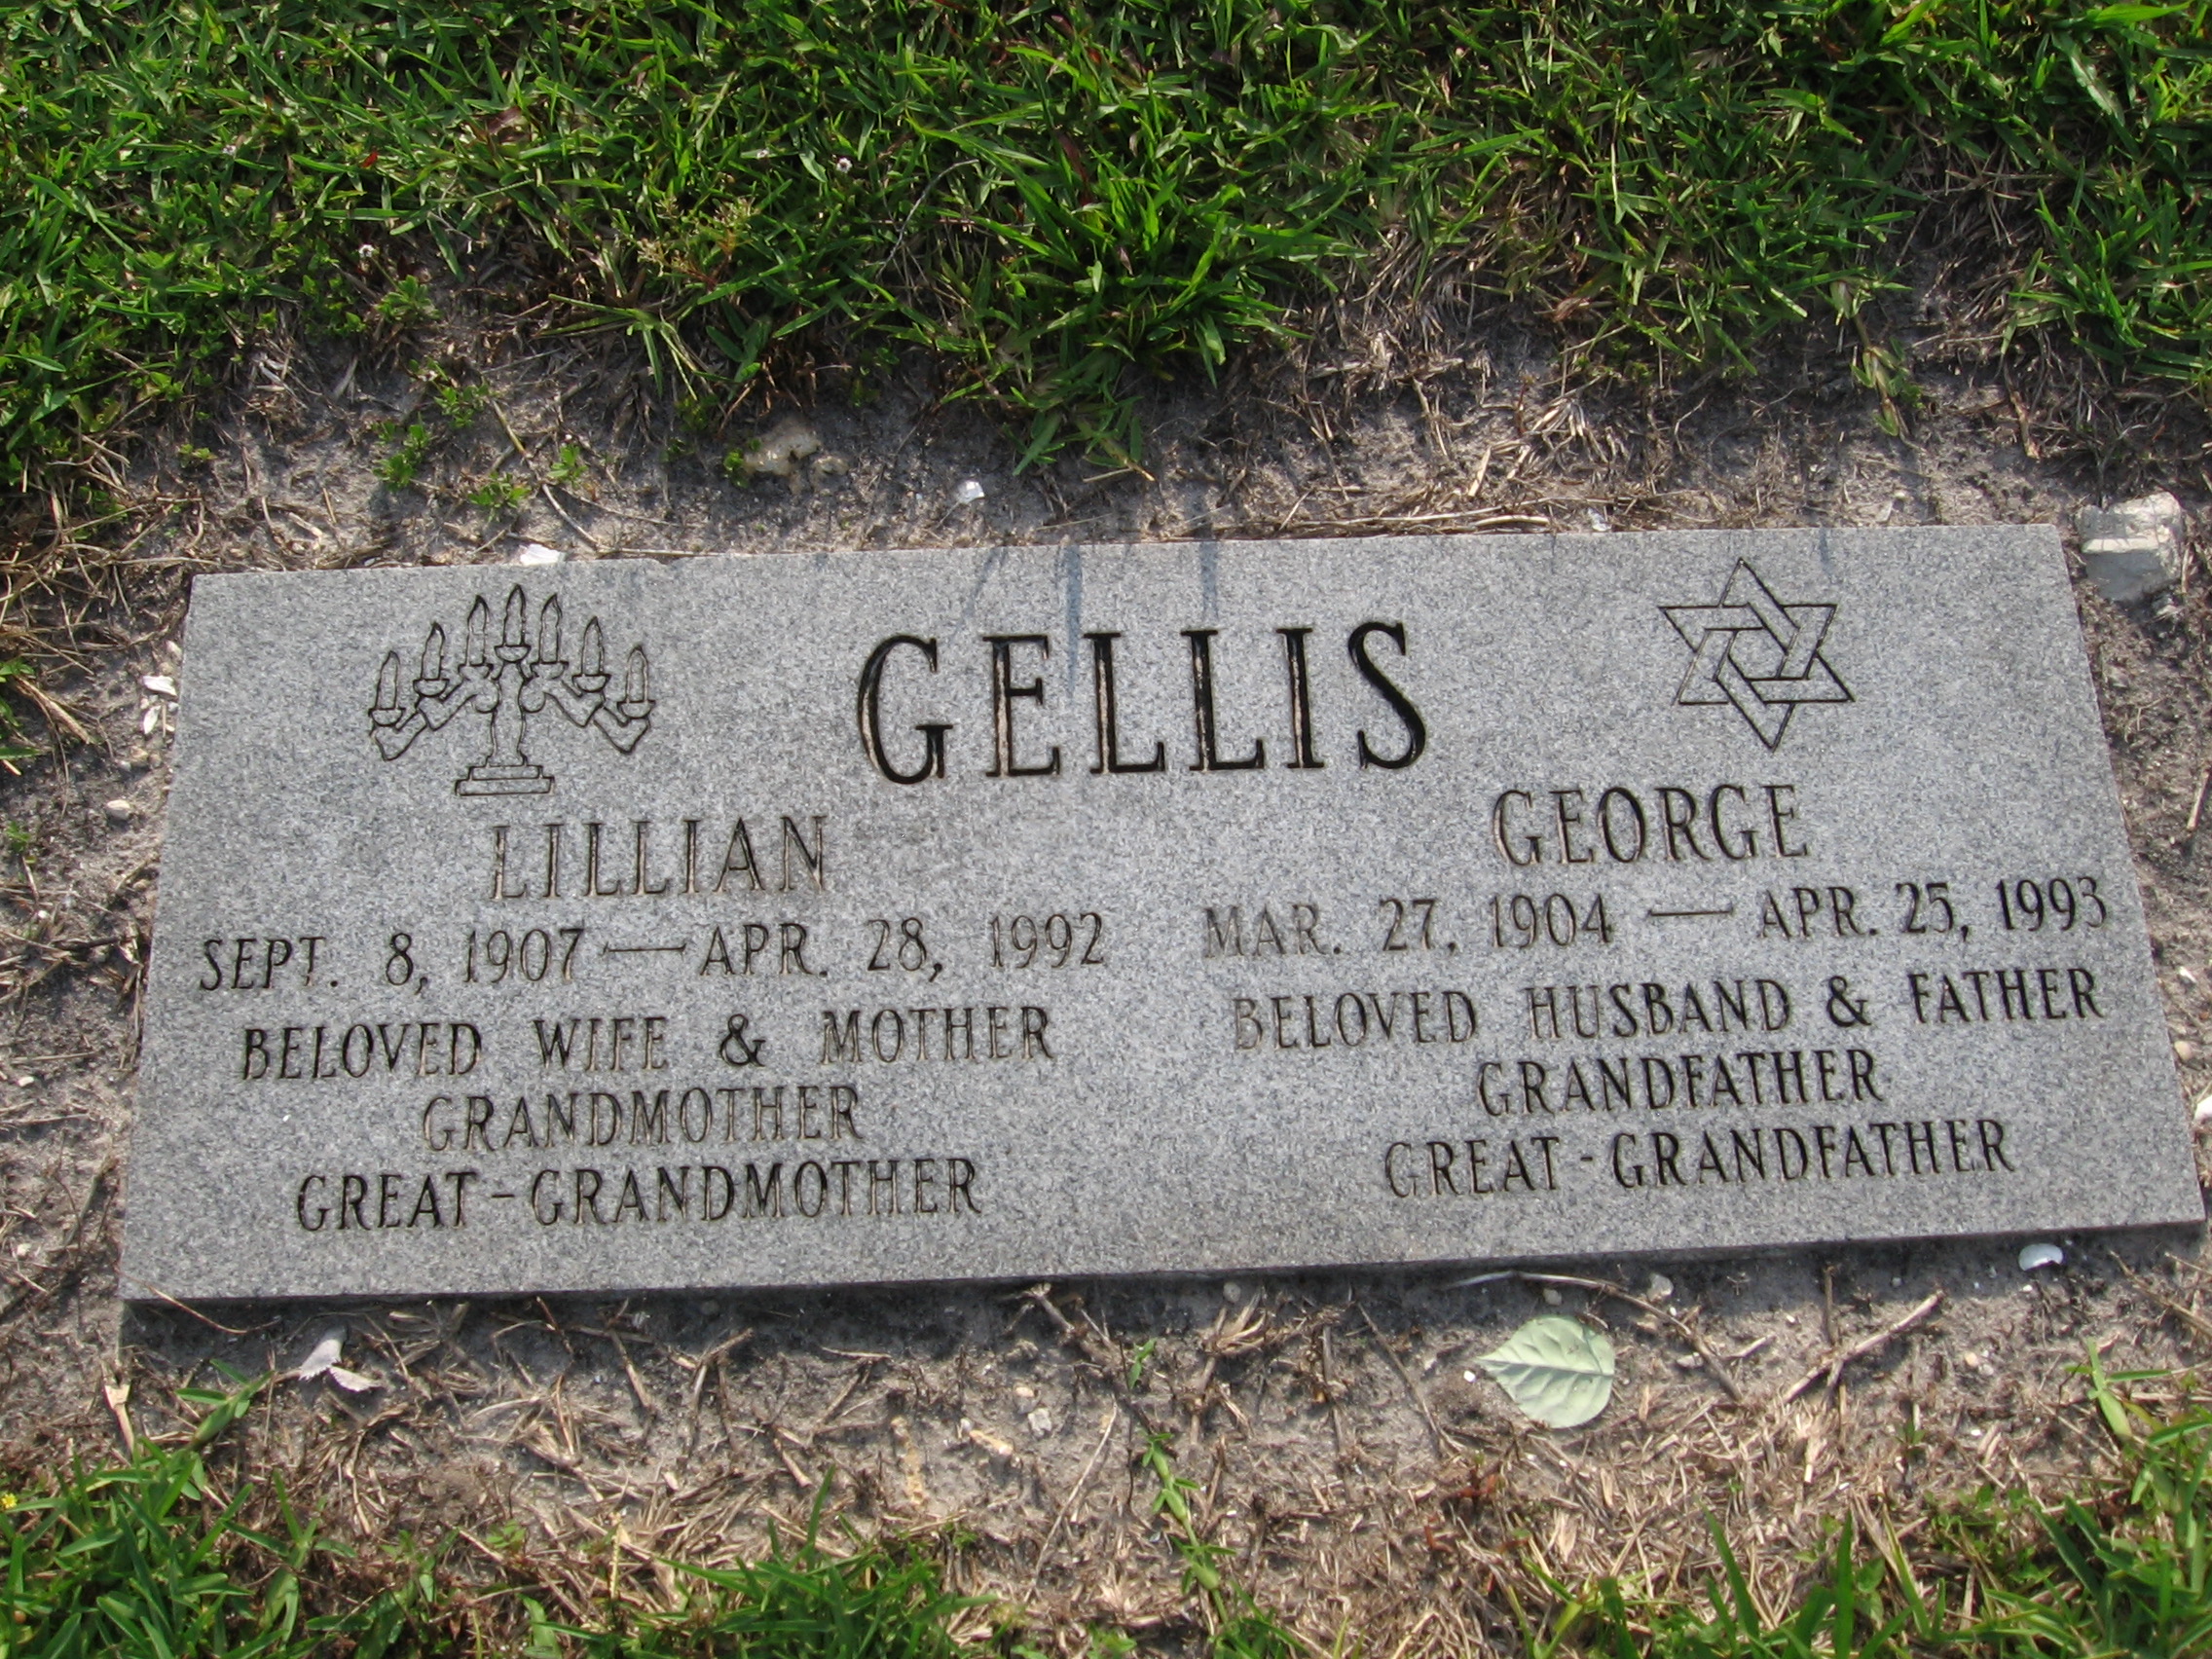 Lillian Gellis